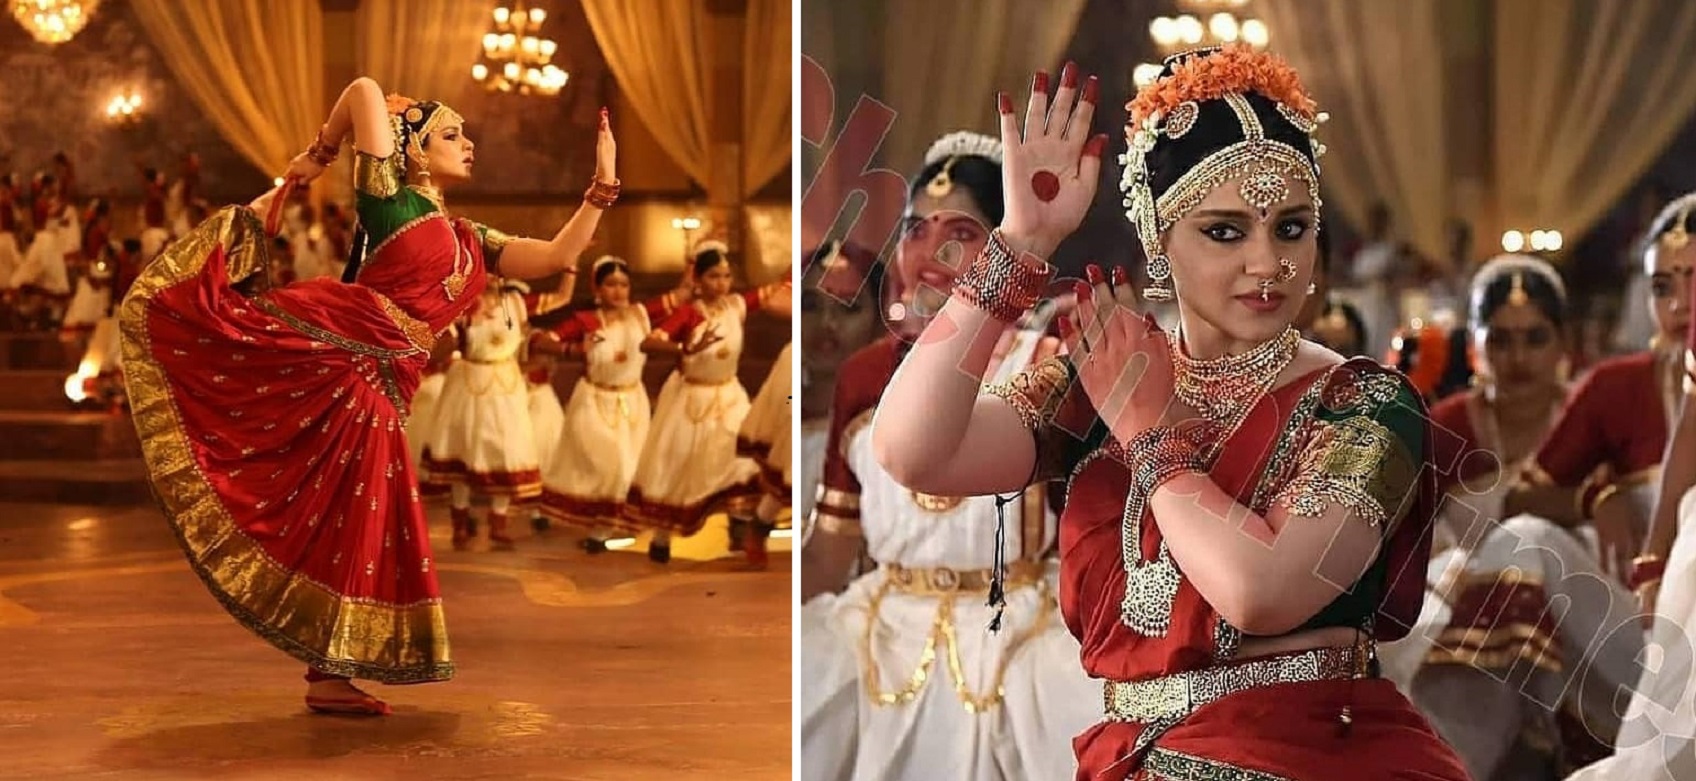 Thalaivi New Look: Kangana Ranaut’s Dazzling Look as Jayalalitha Becomes Most Trending Topic!